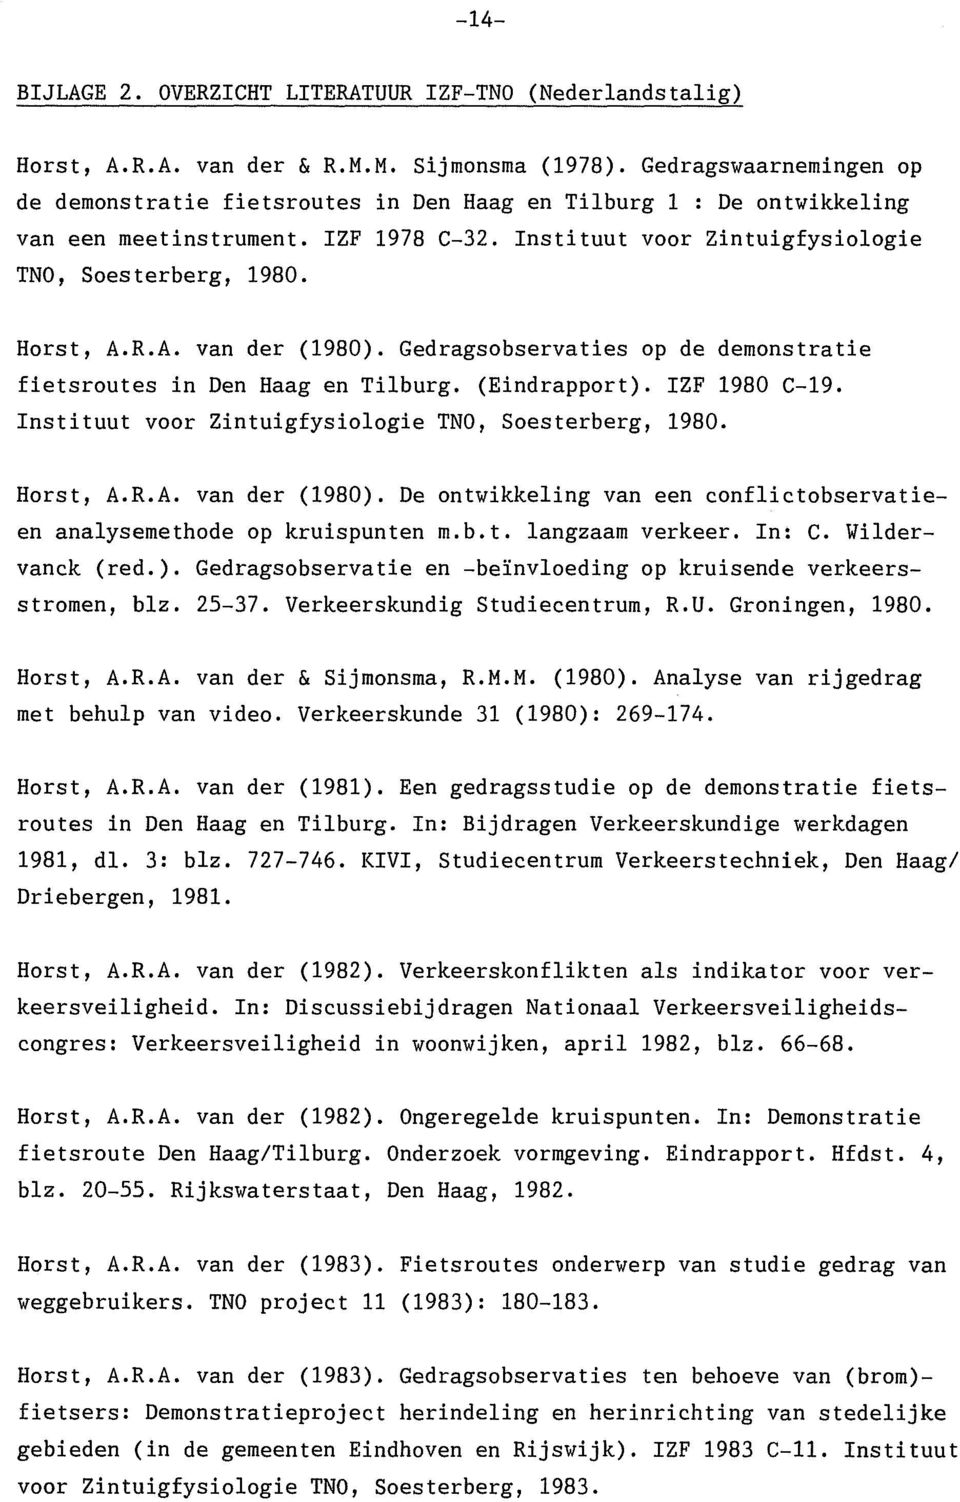 A. van der (1980). Gedragsobservaties op de demonstratie fietsroutes in Den Haag en Tilburg. (Eindrapport). ZF 1980 C-19. nstituut voor Zintuigfysiologie TNO, Soesterberg, 1980. Horst, A.R.A. van der (1980). De ontwikkeling van een conflictobservatieen analysemethode op kruispunten m.